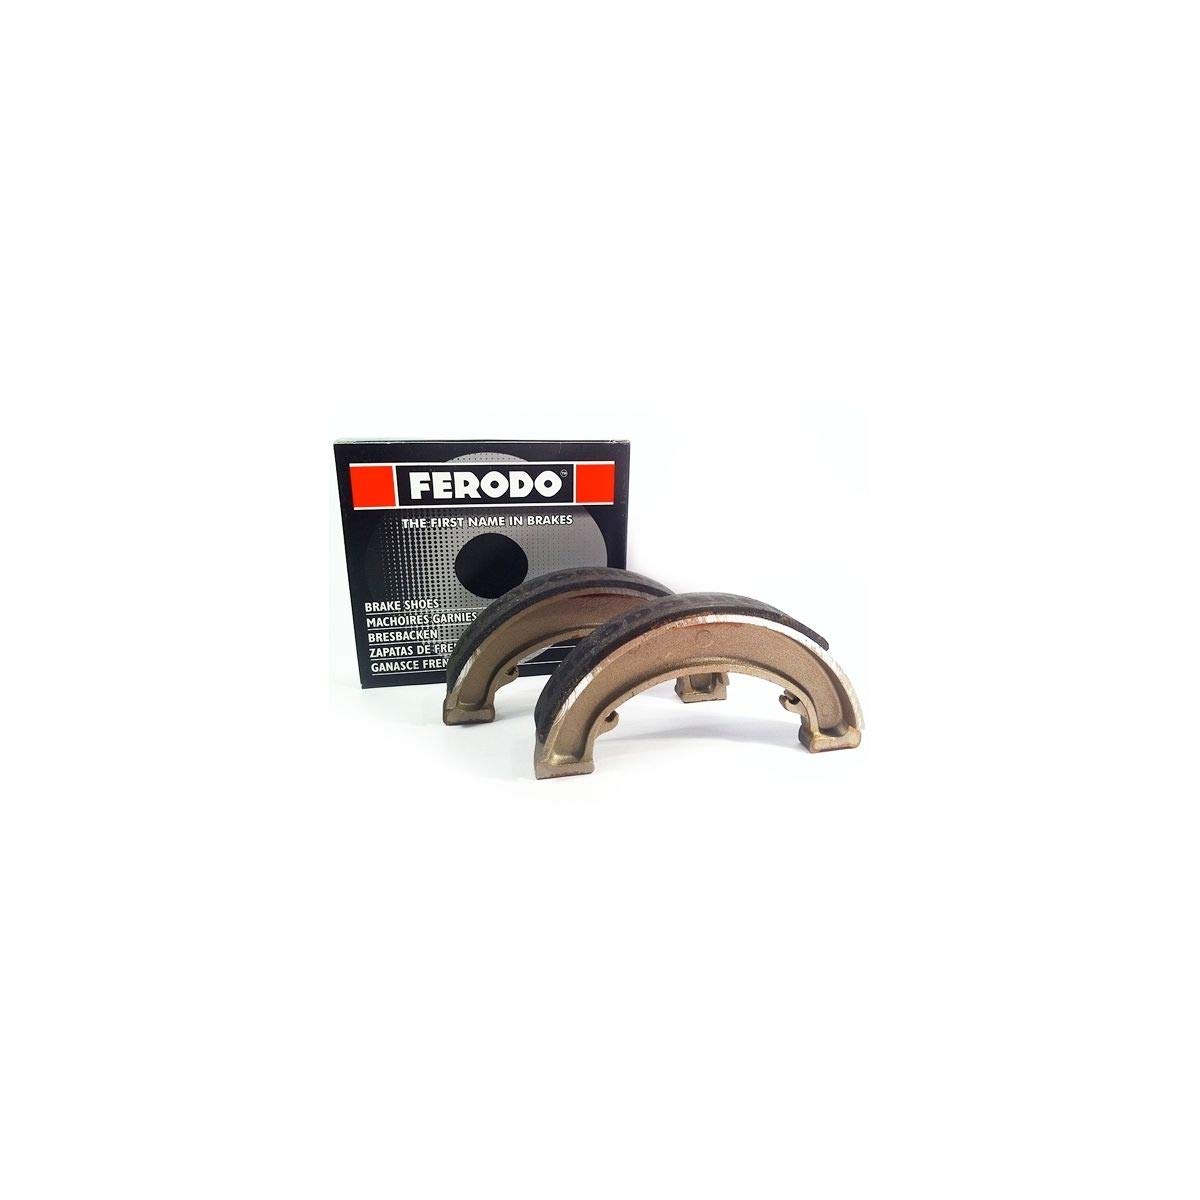 Ferodo Bremsbacken fsb719 (Trommelbremse und Backen)/Brake Shoes fsb719 (BRAKE DRUM AND CLAMPING Jaws) von Ferodo